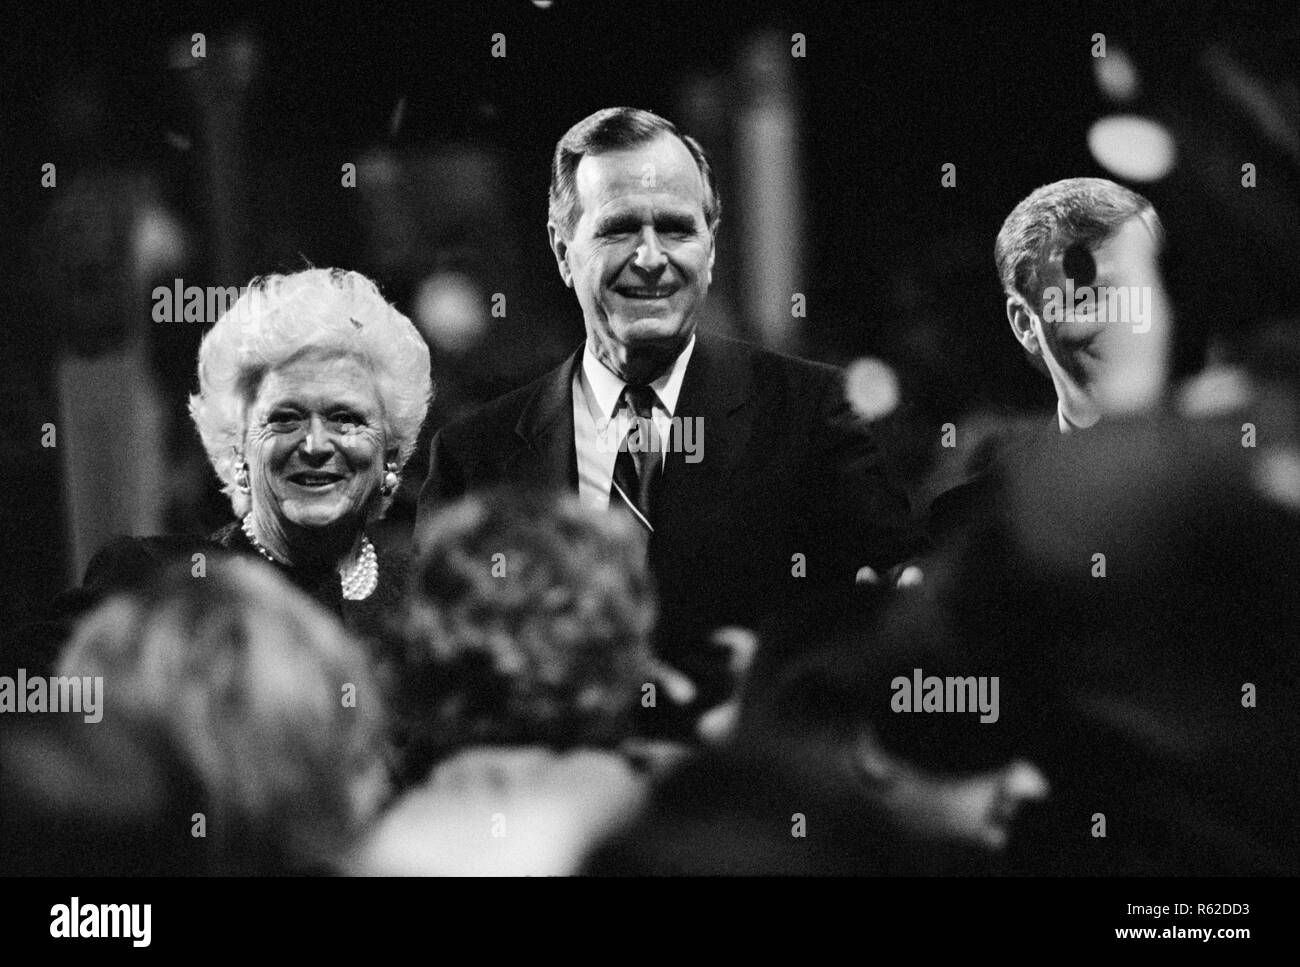 Candidat à la présidence George H. W. Bush, son épouse Barbara Bush et à la vice-présidence prête-nom Dan Quayle reconnaître la foule lors de la Convention nationale républicaine de 1992 à Houston, Texas. Banque D'Images